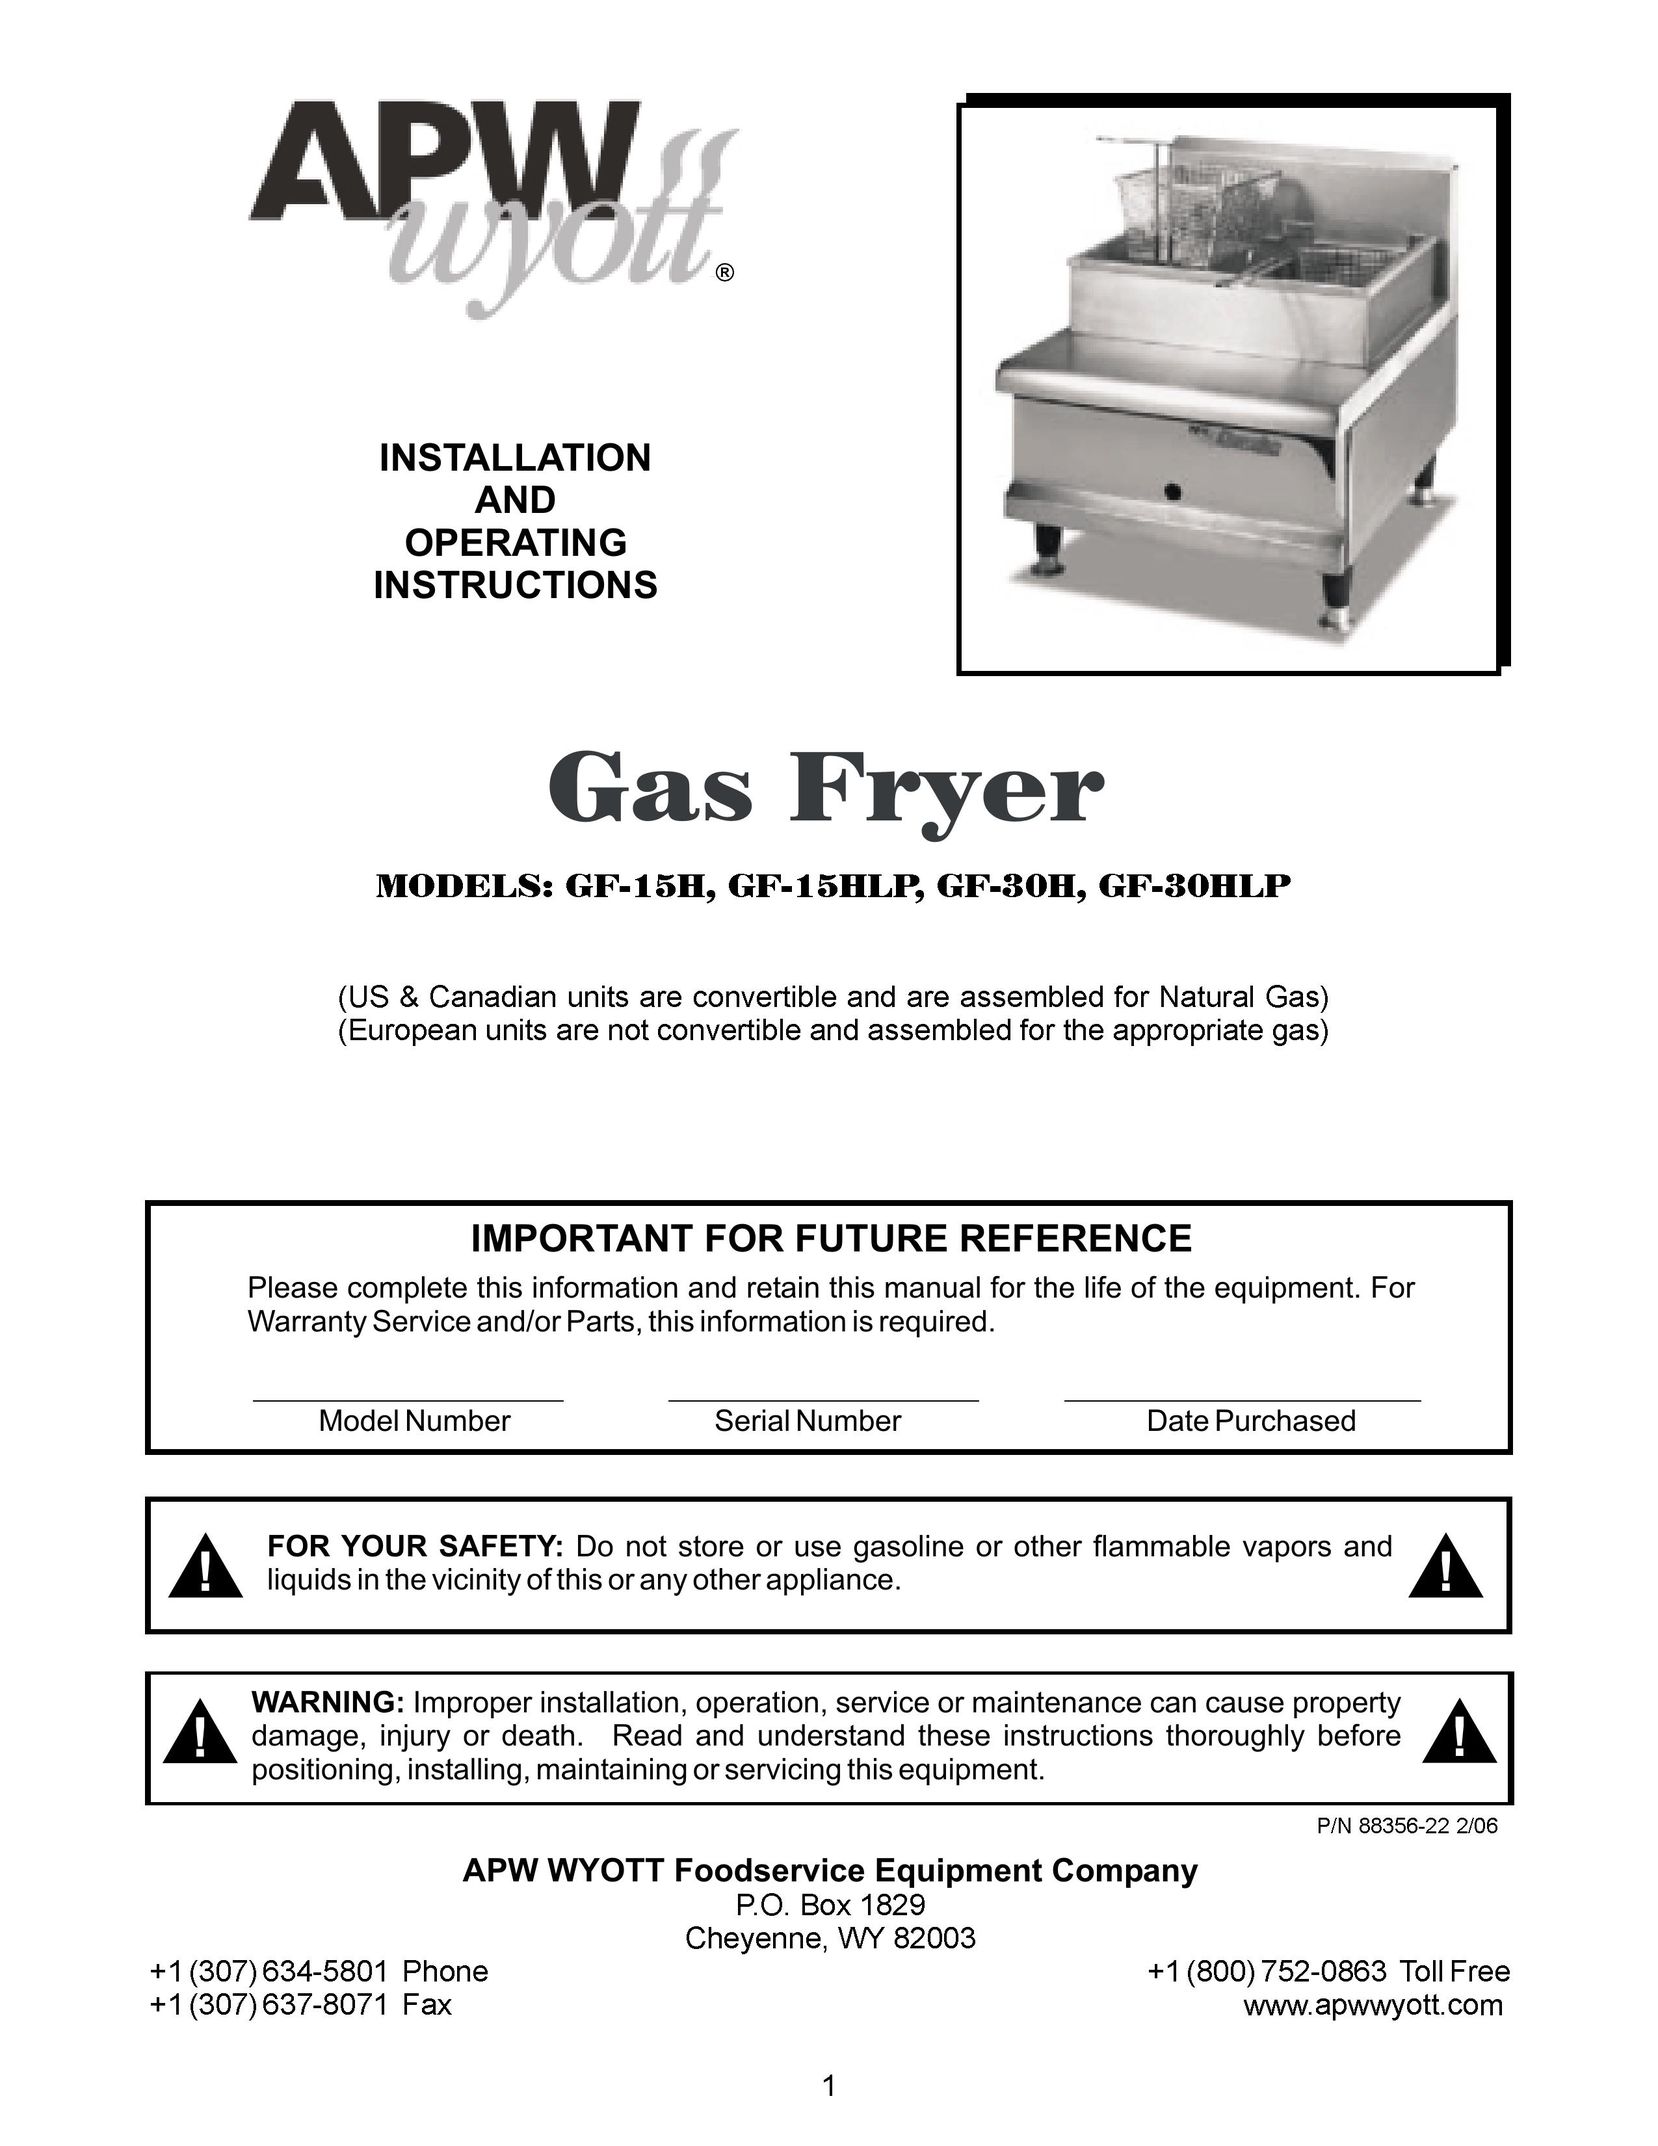 APW Wyott GF-30HLP Fryer User Manual